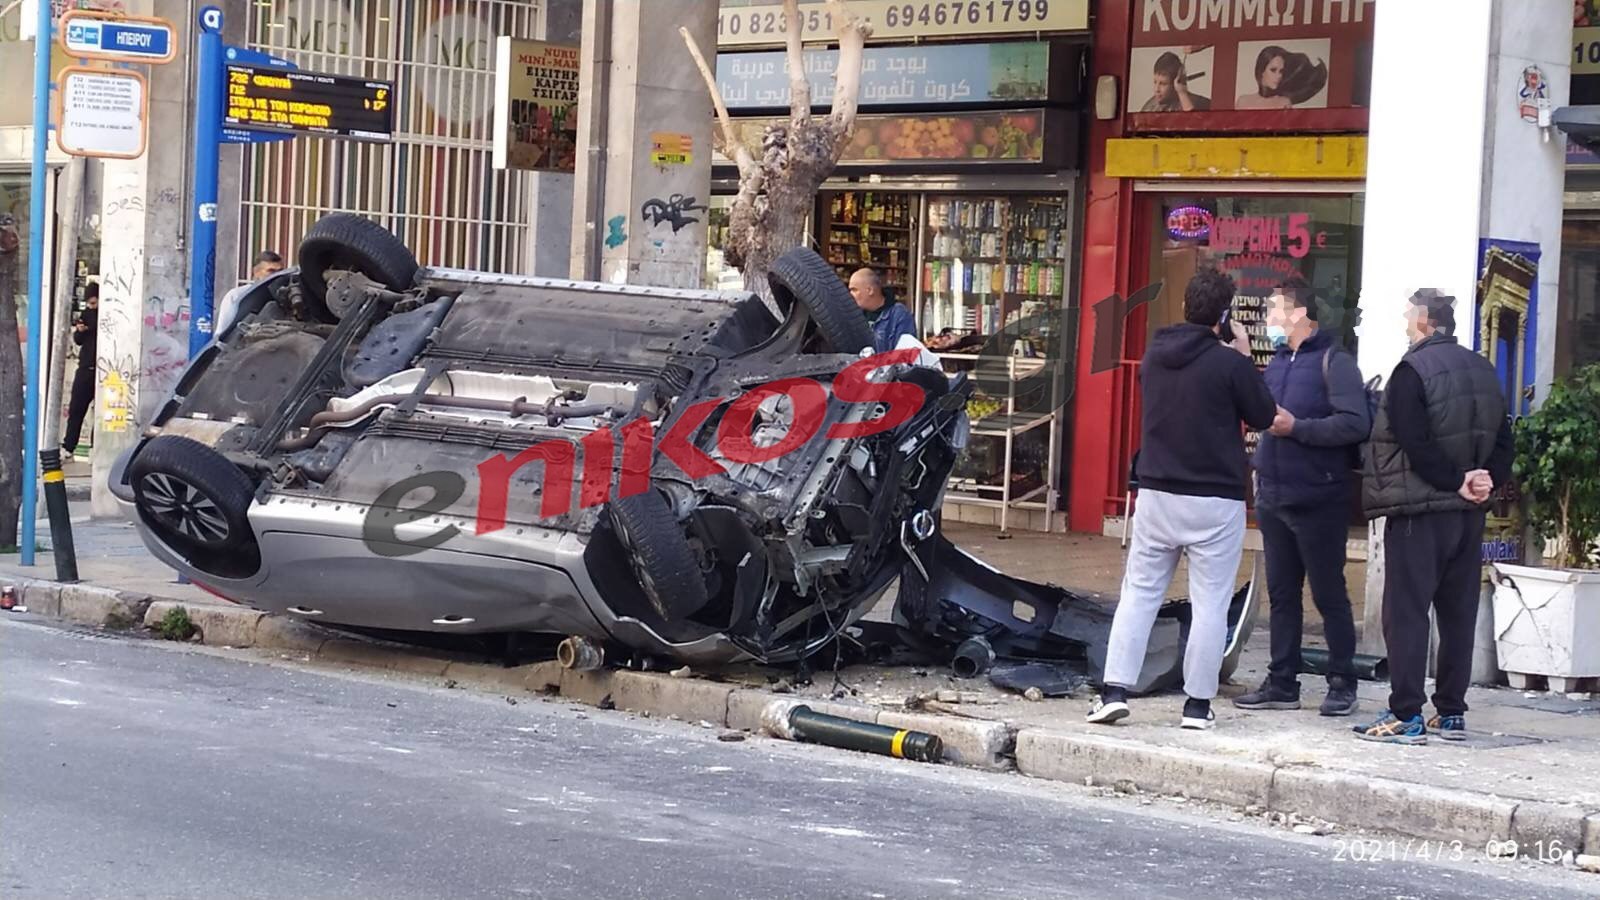 Σοβαρό τροχαίο στη Λιοσίων: Αυτοκίνητο έπεσε πάνω σε στάση λεωφορείου – ΦΩΤΟ αναγνώστη